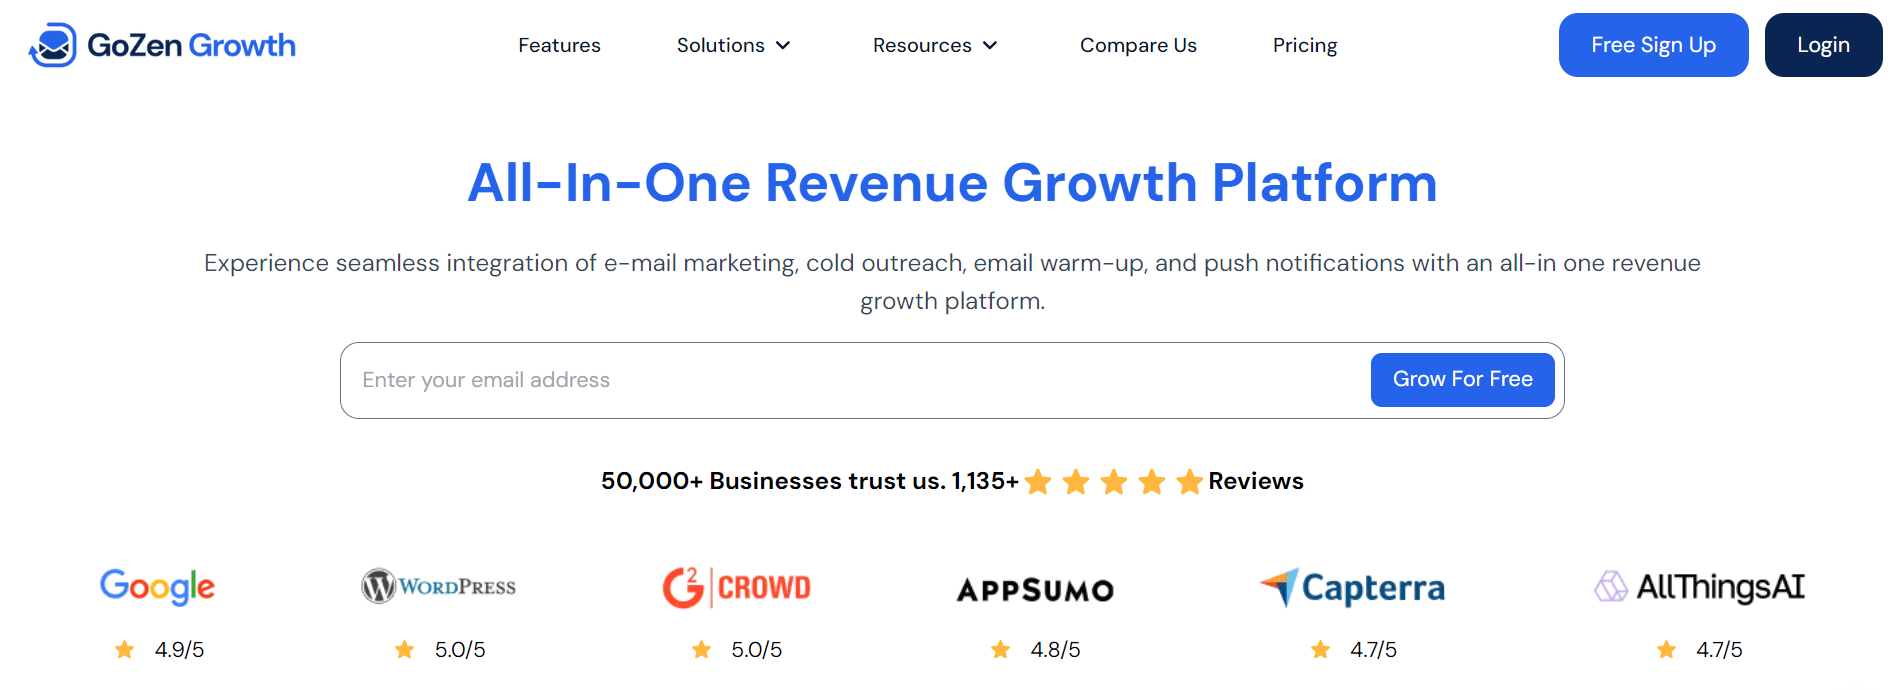 GoZen Growth WooCommerce Plugin